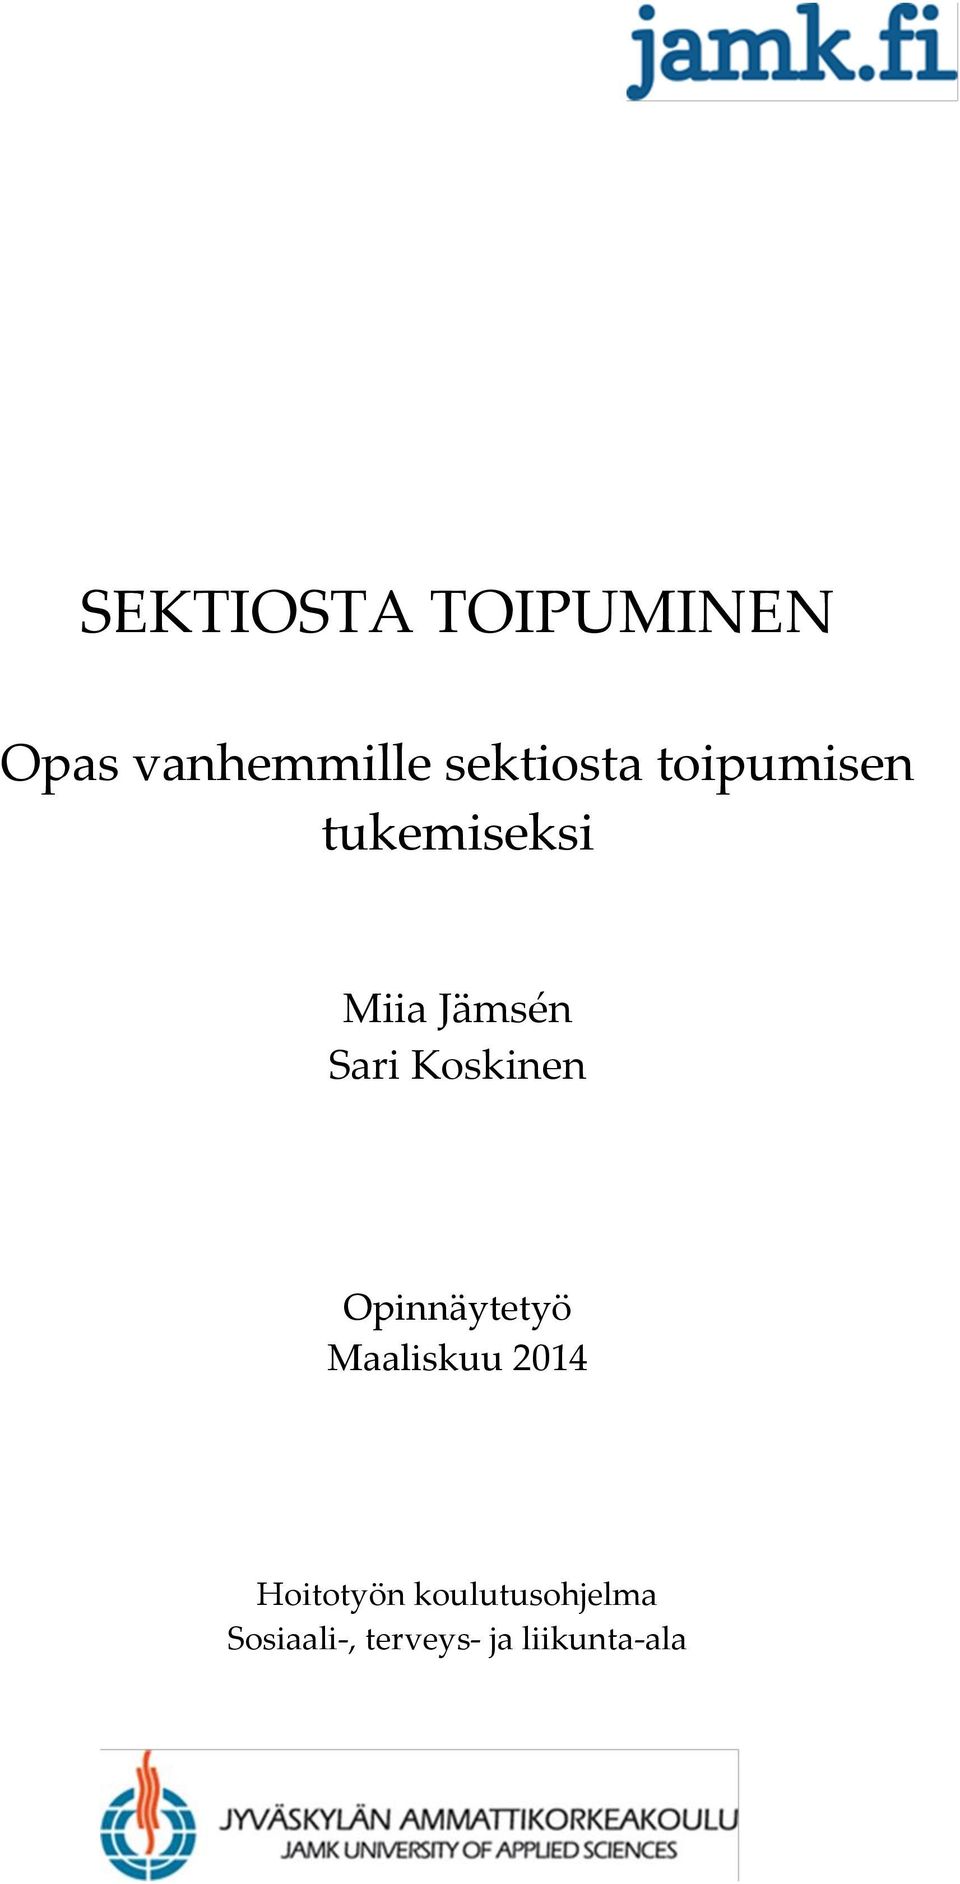 Sari Koskinen Opinnäytetyö Maaliskuu 2014